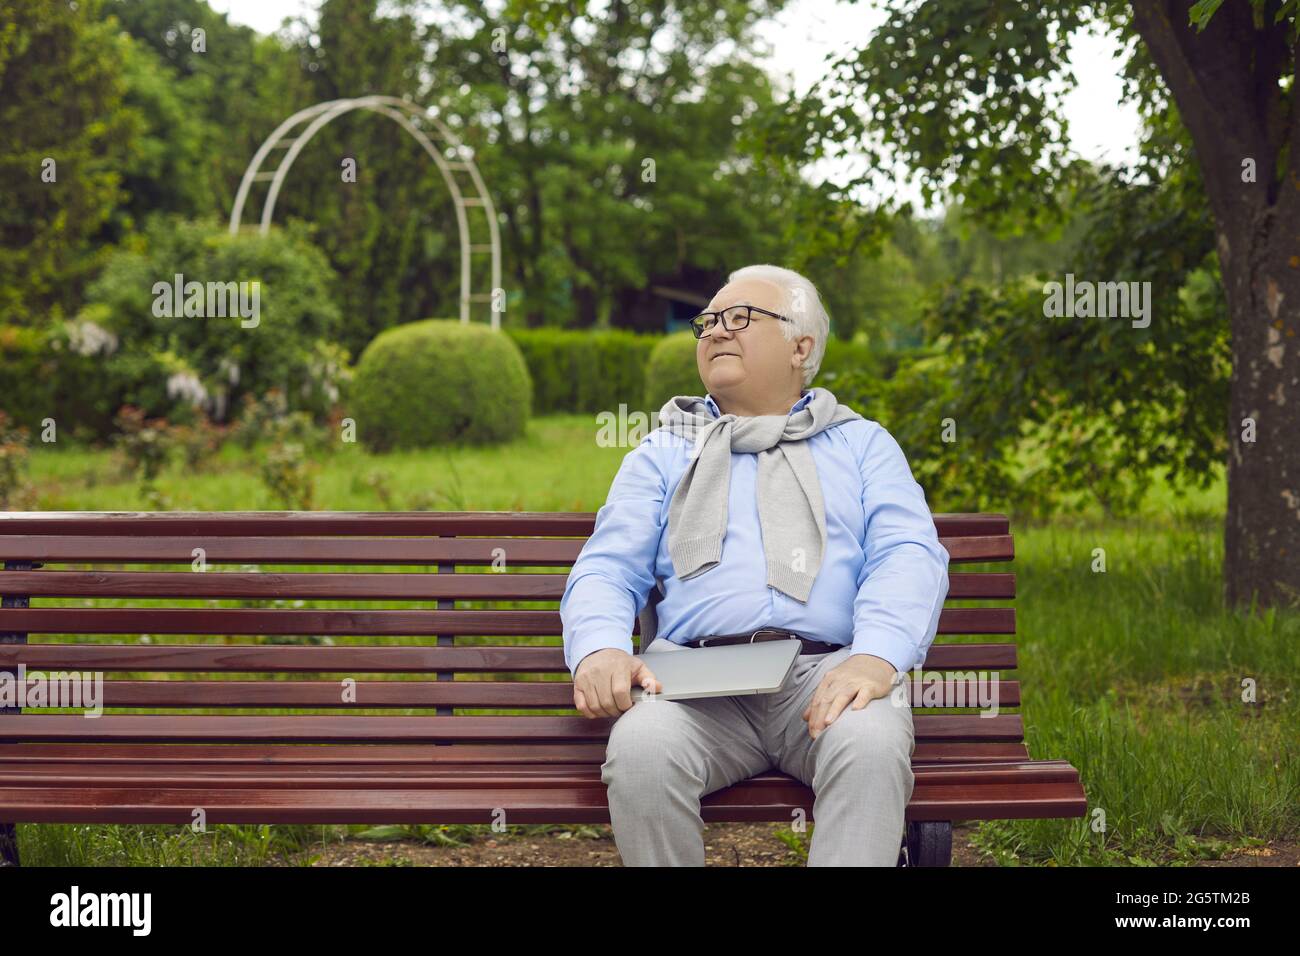 Ein glücklicher älterer Mann mit einem Laptop sitzt auf einer Bank in einem grünen Sommerpark Stockfoto